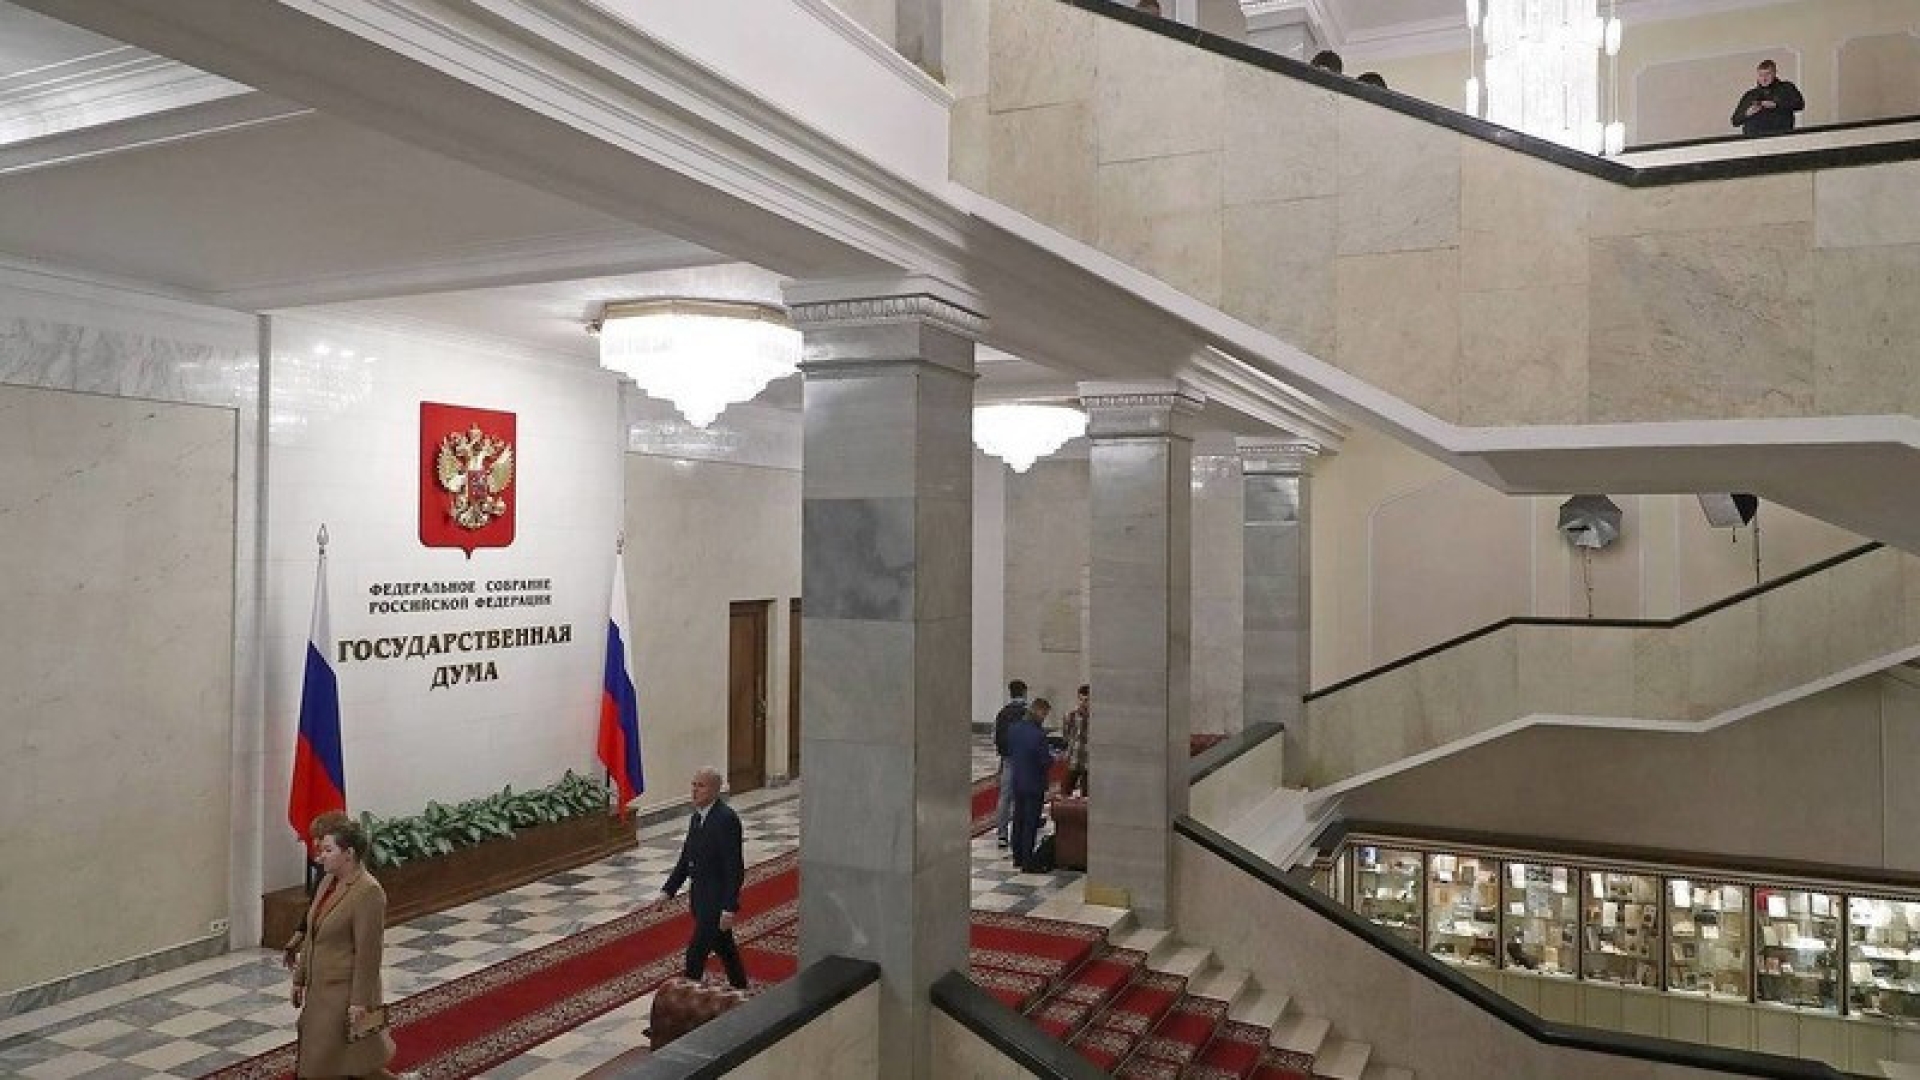 Комитет Госдумы направил в Совет палаты два проекта постановления по признанию ДНР и ЛНР